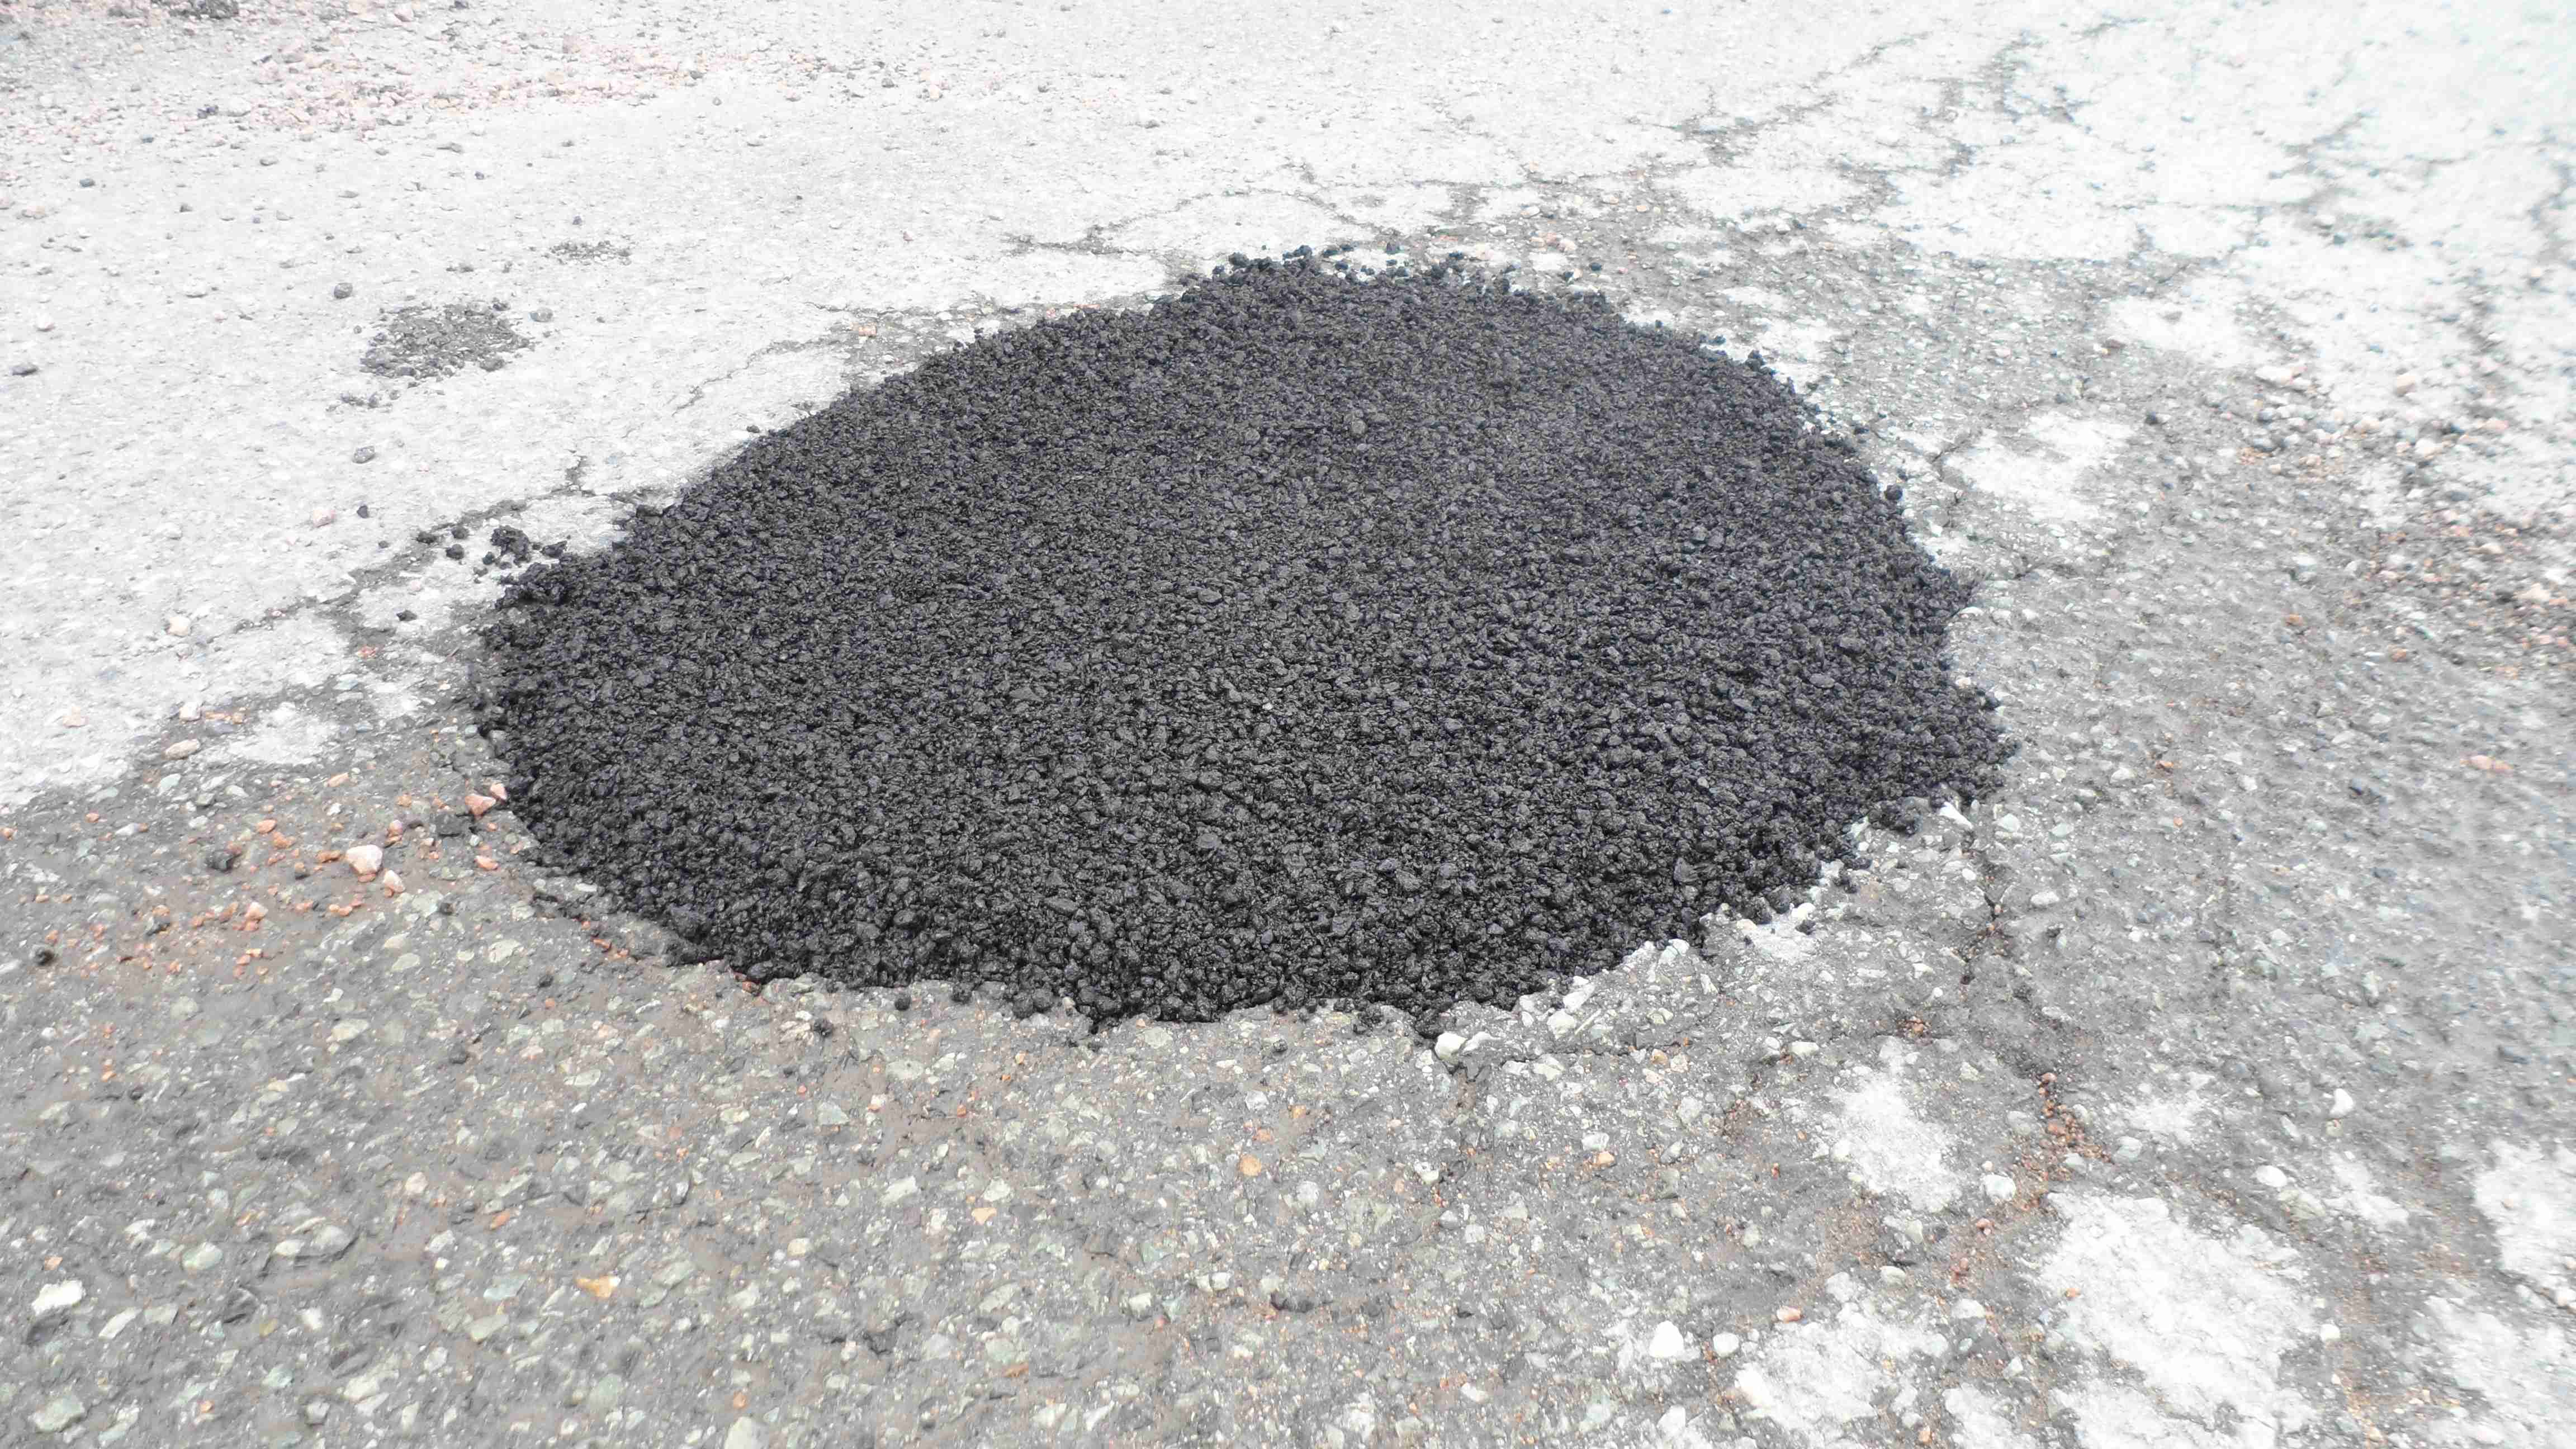 Legg asfalten med 3-4cm overhøyde